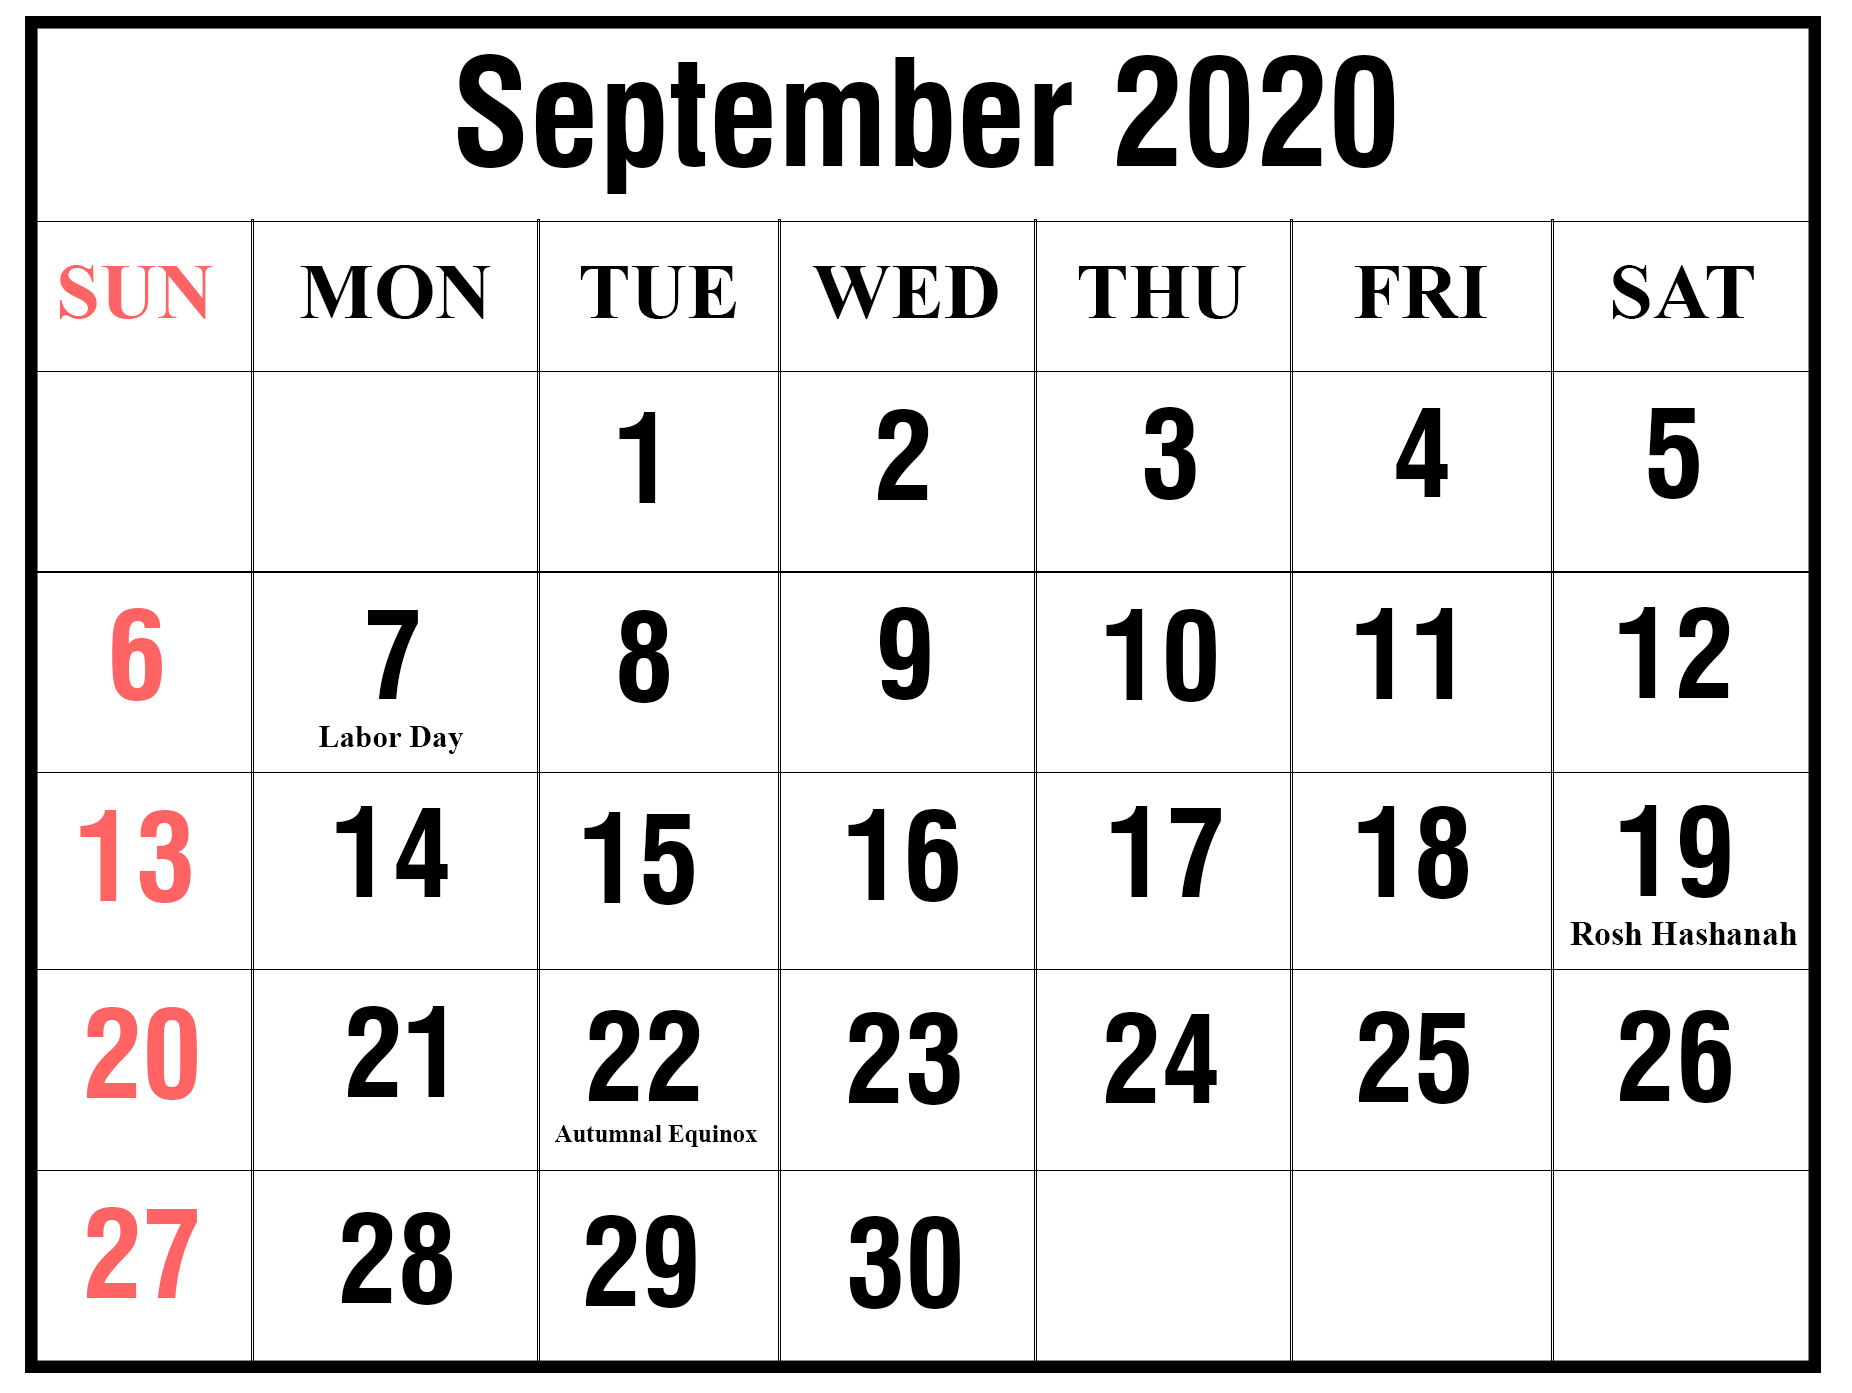 September 2020 Calendar Word - Wpa.wpart.co